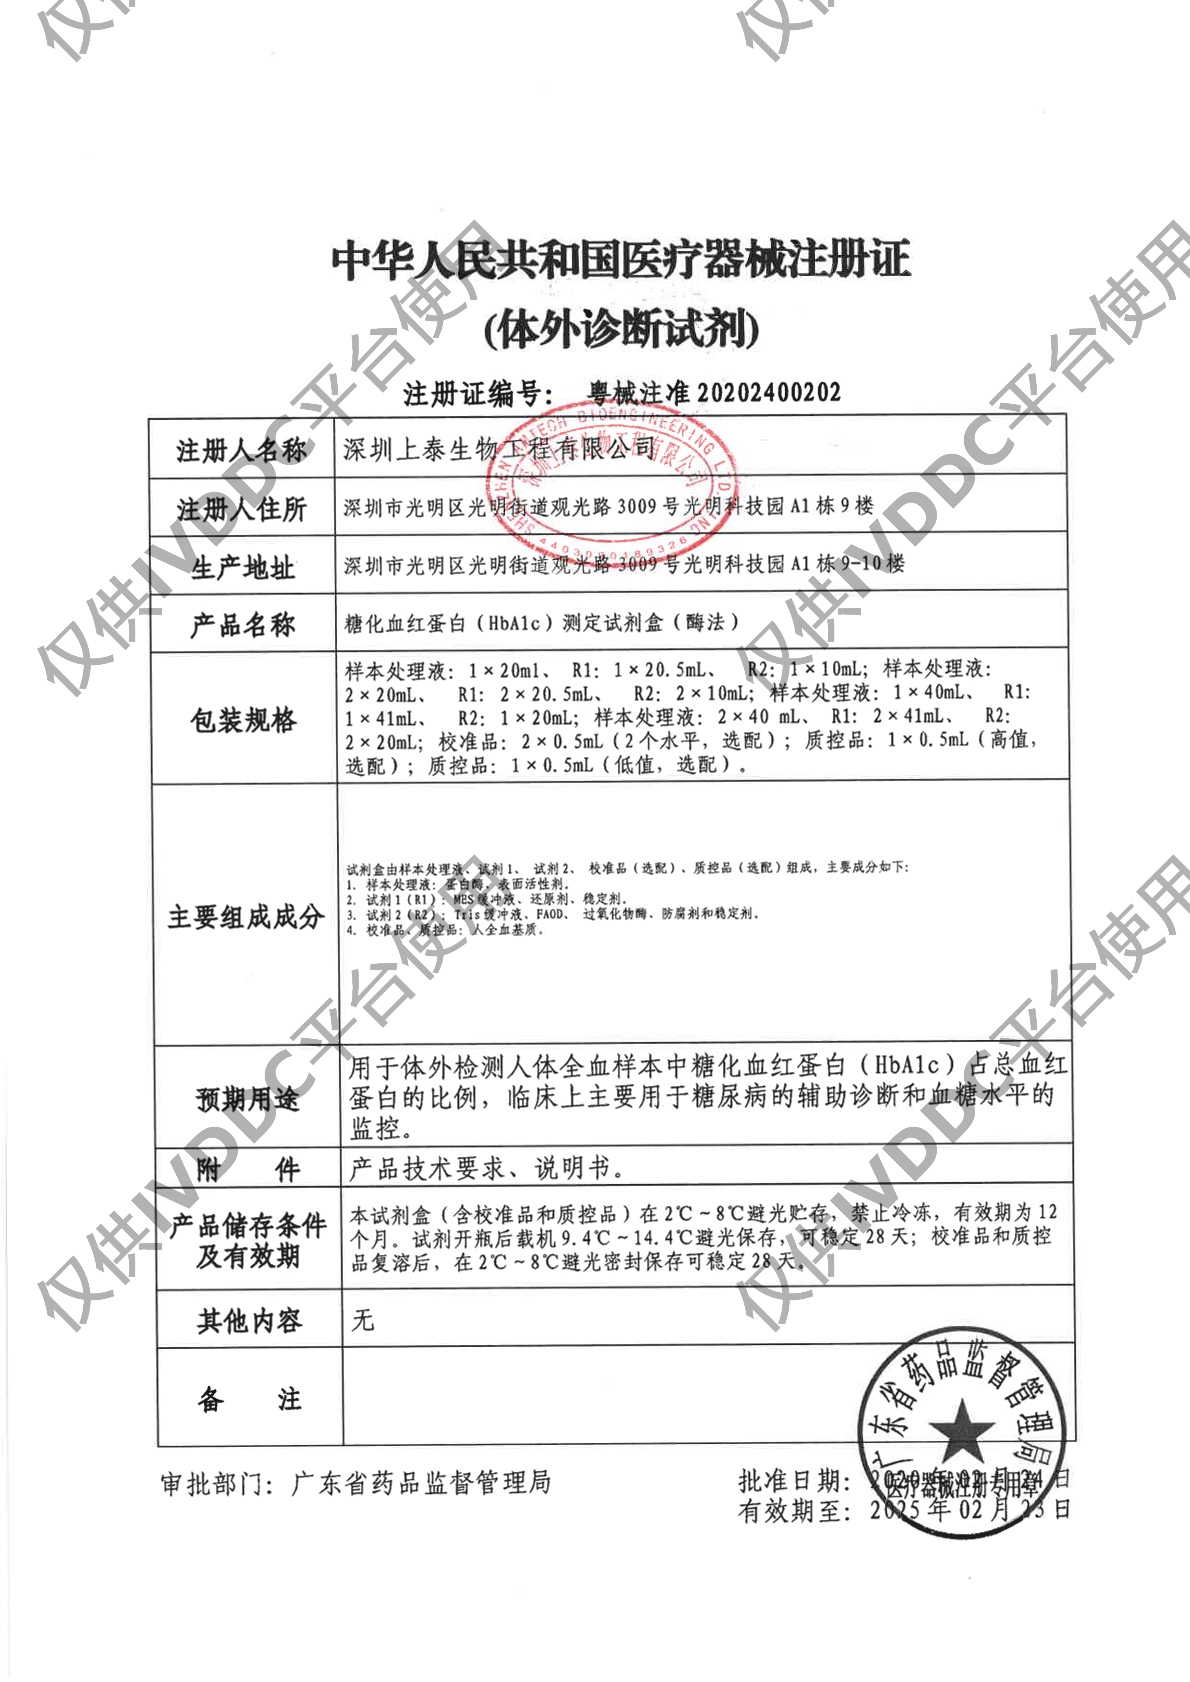 【深圳上泰】糖化血红蛋白(HbA1c)测定试剂盒(酶法)注册证